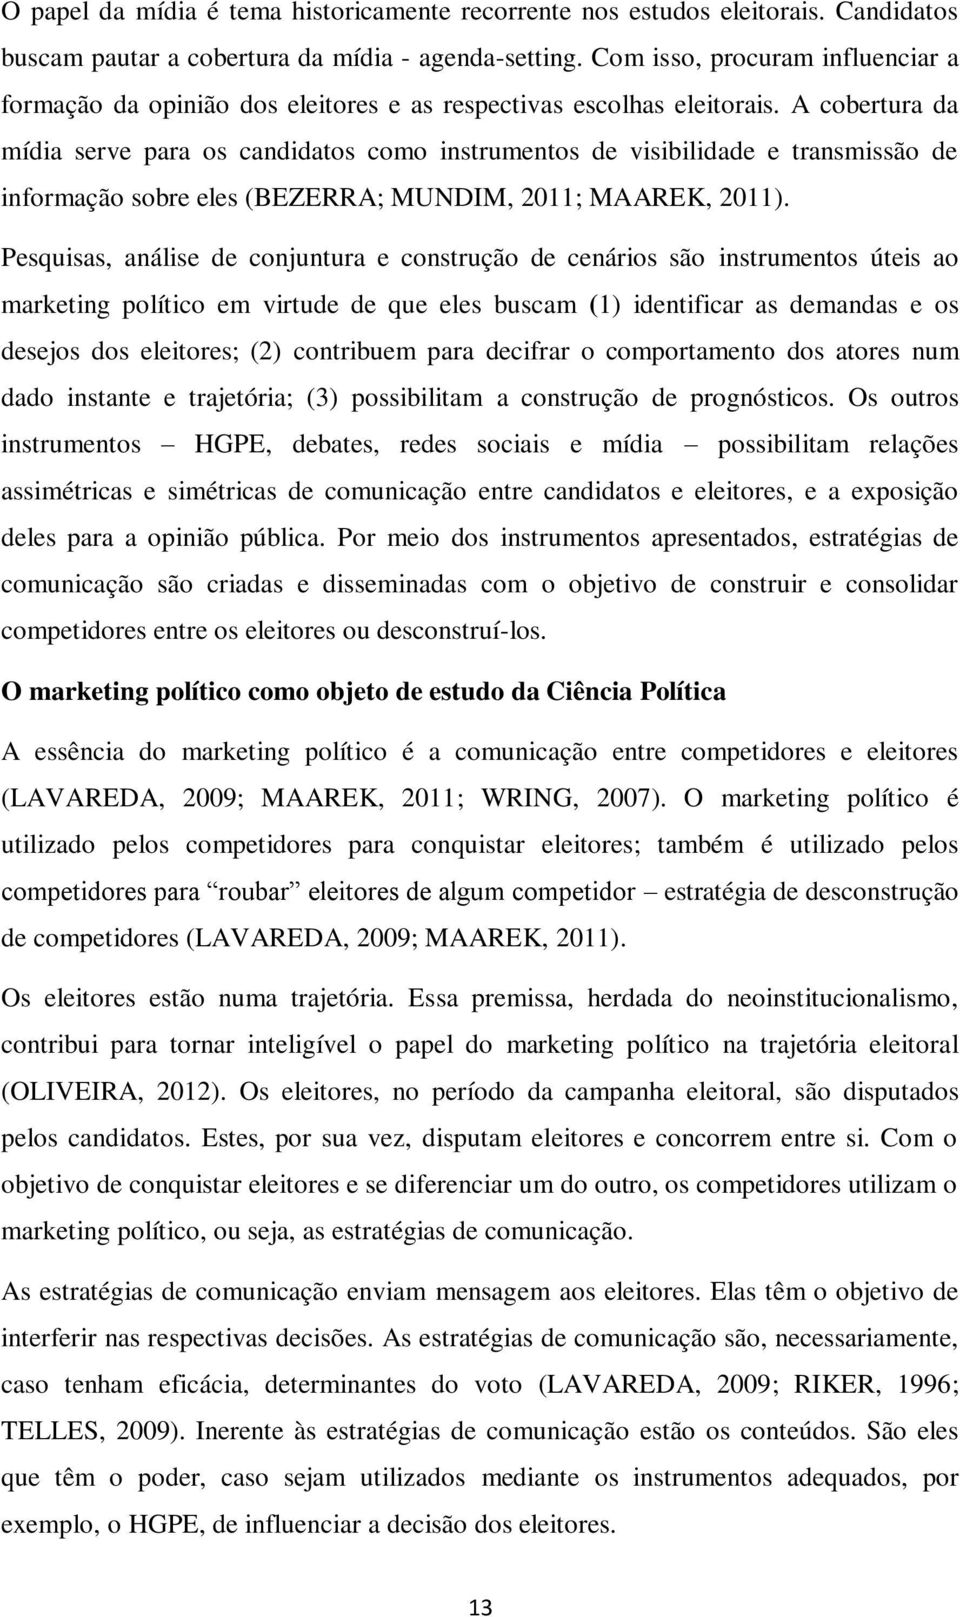 A cobertura da mídia serve para os candidatos como instrumentos de visibilidade e transmissão de informação sobre eles (BEZERRA; MUNDIM, 2011; MAAREK, 2011).